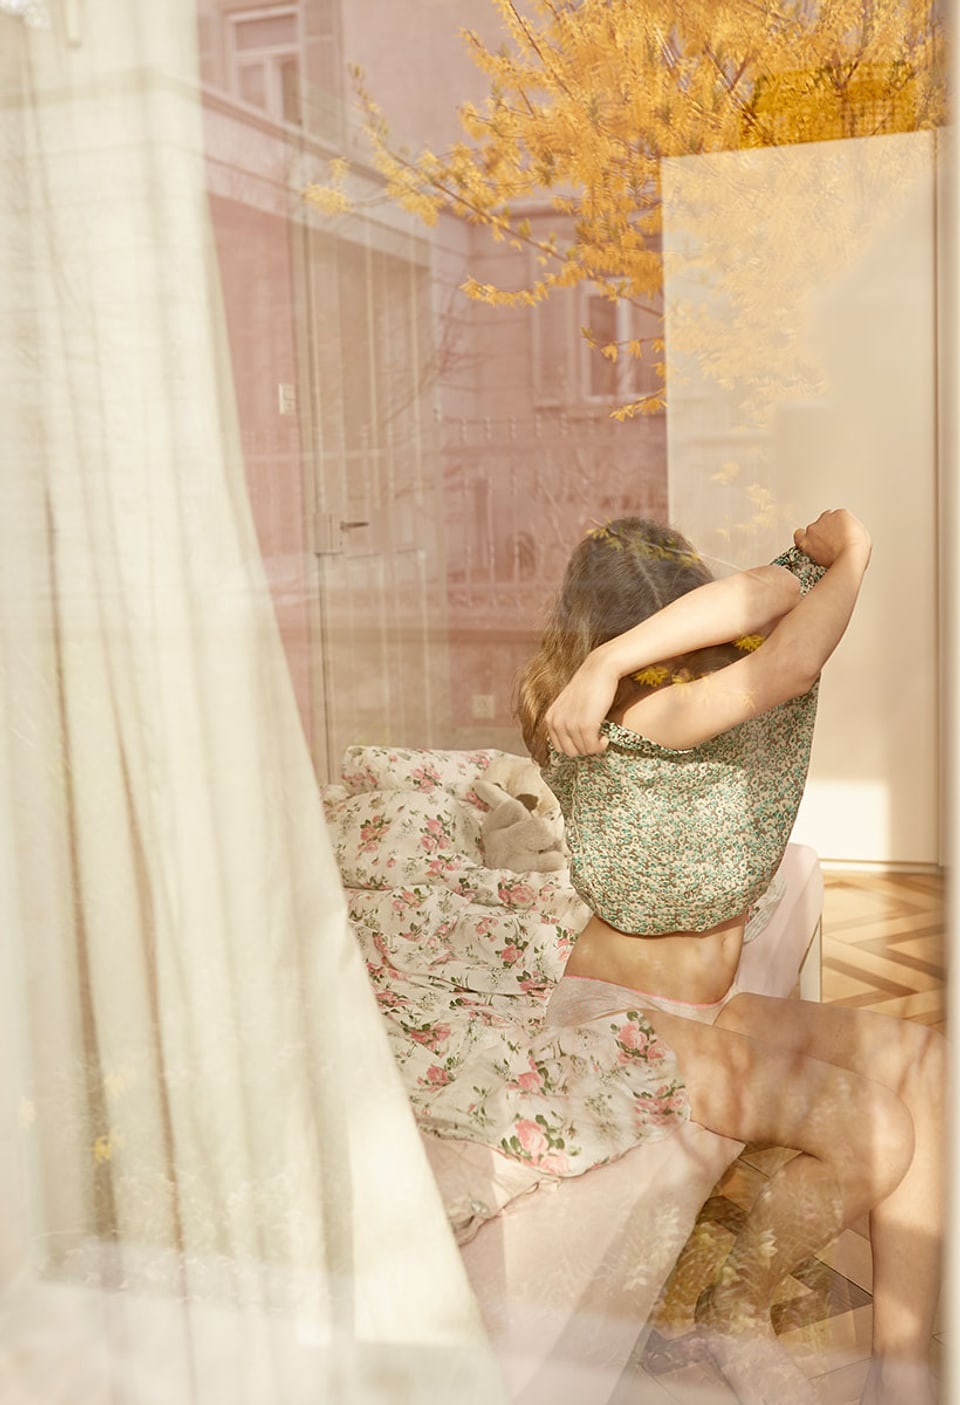 Durch ein Fenster sieht man ein Mädchen, dass sich den Pullover auszieht.